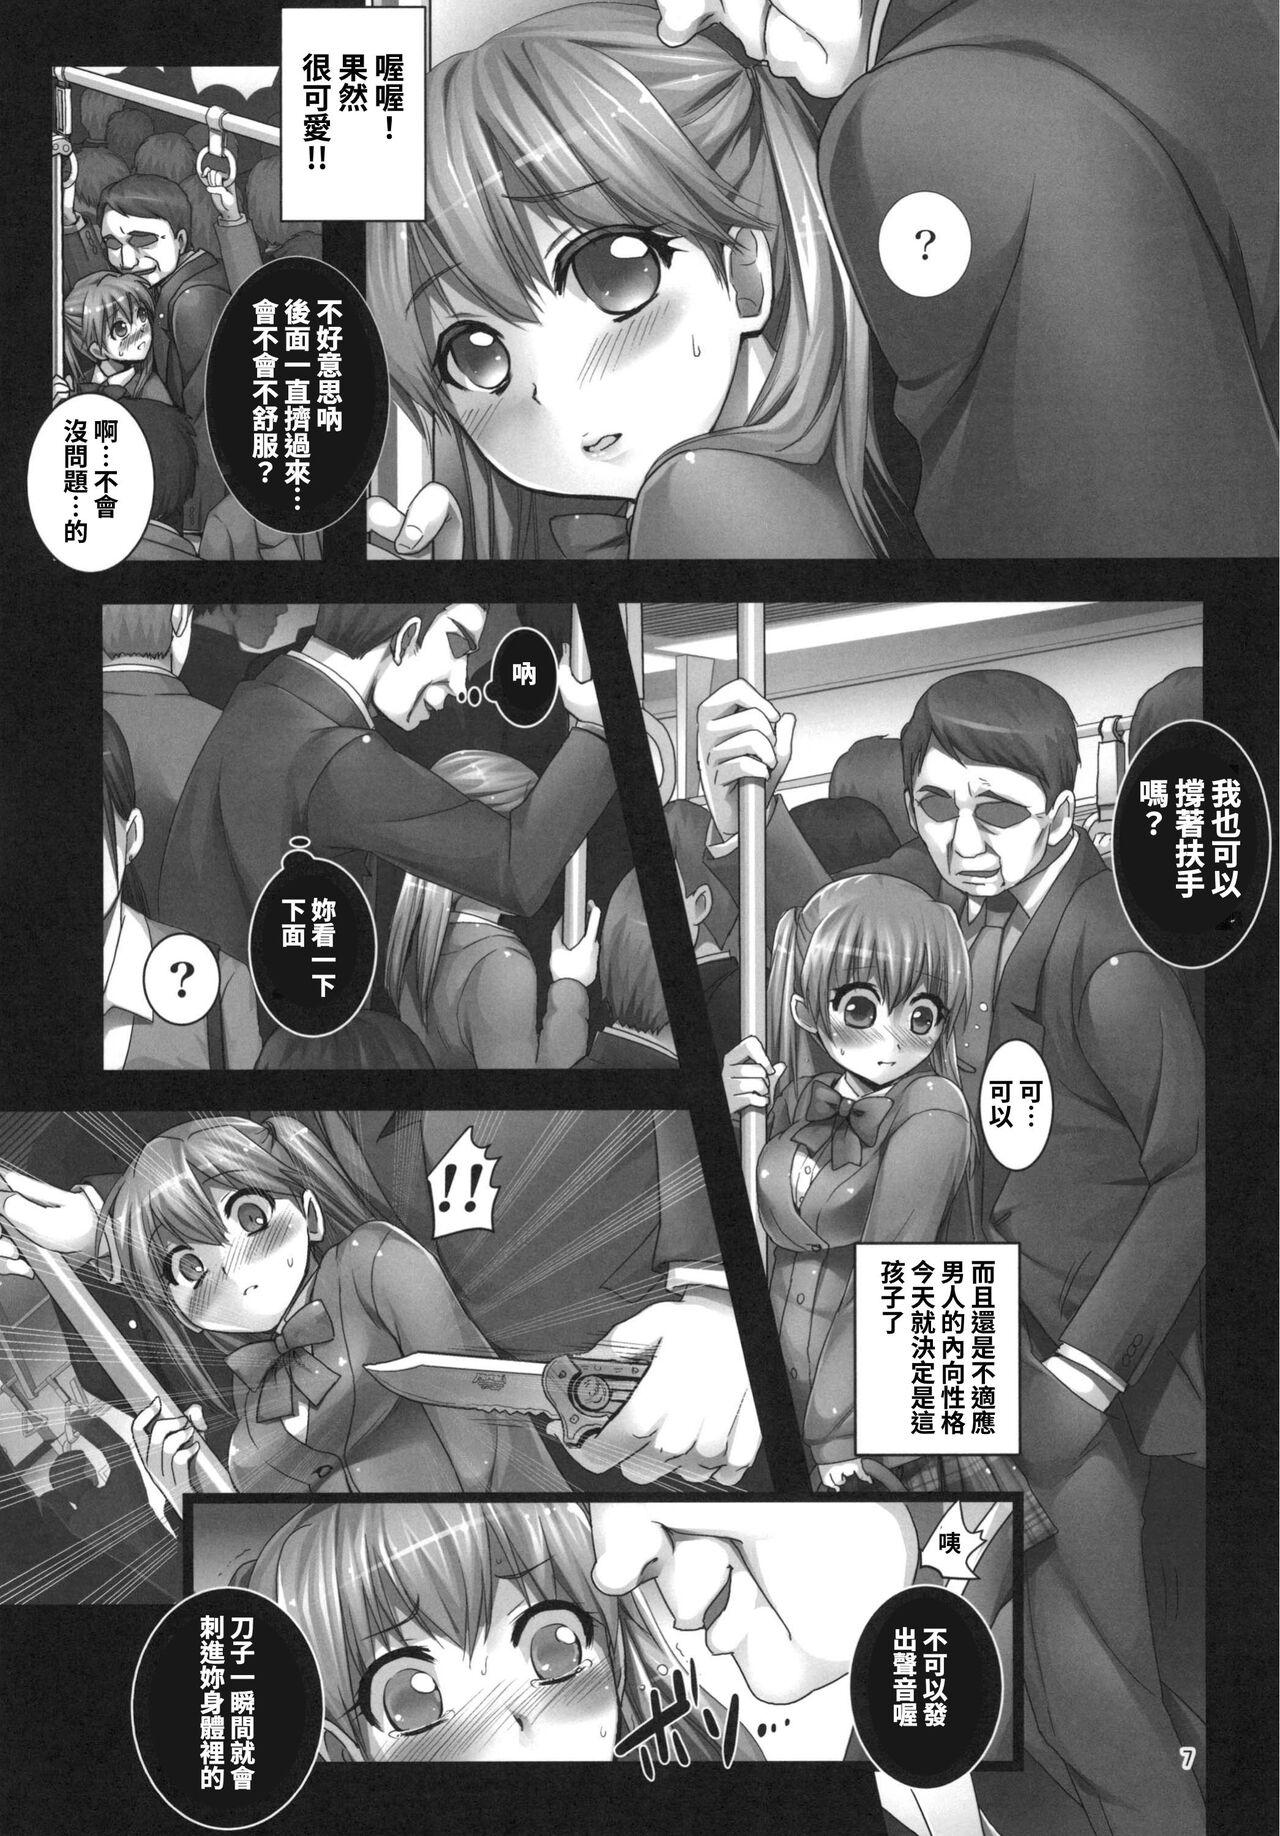 Titten 【繁体中文版】朝の満員電車で処女JKをどこまで開発できるのか - Original Amature - Page 7